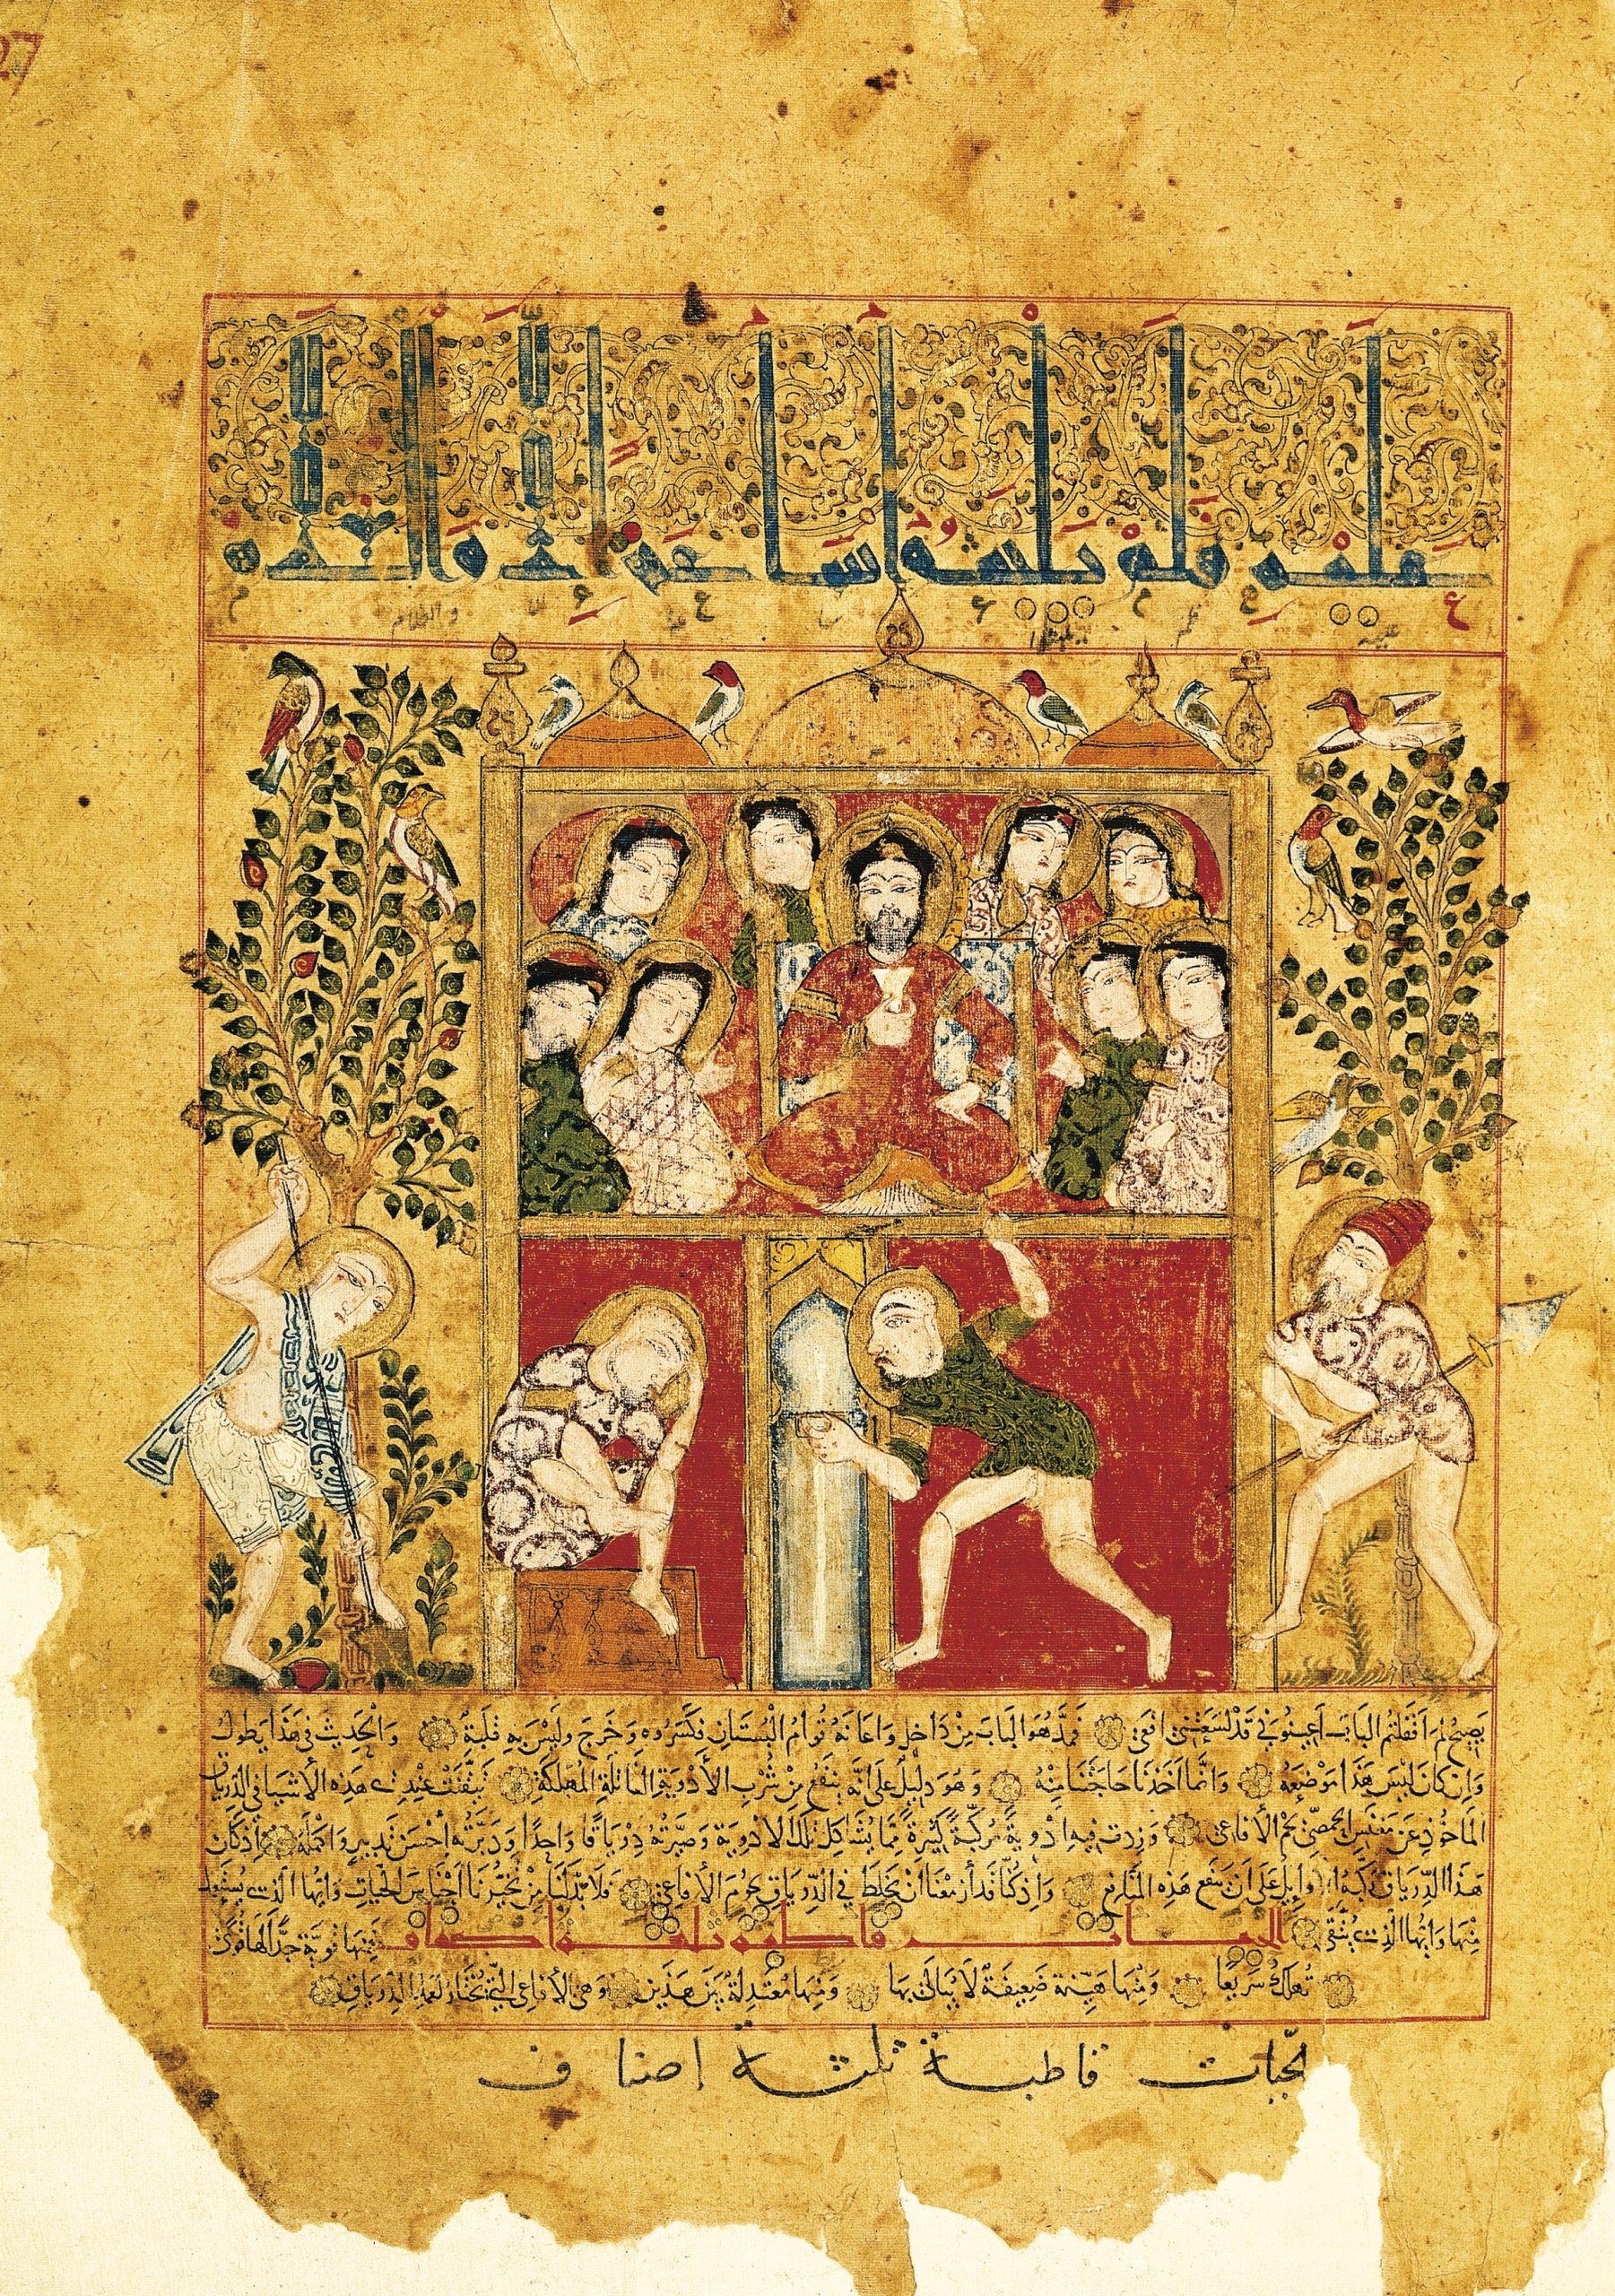 Pintura antiga e colorida com um homem ao centro segurando um cálice e diversas pessoas ao redor. Abaixo, deles, há dois homens, um sentado com a mão na cabeça e um em pé com algo na mão.